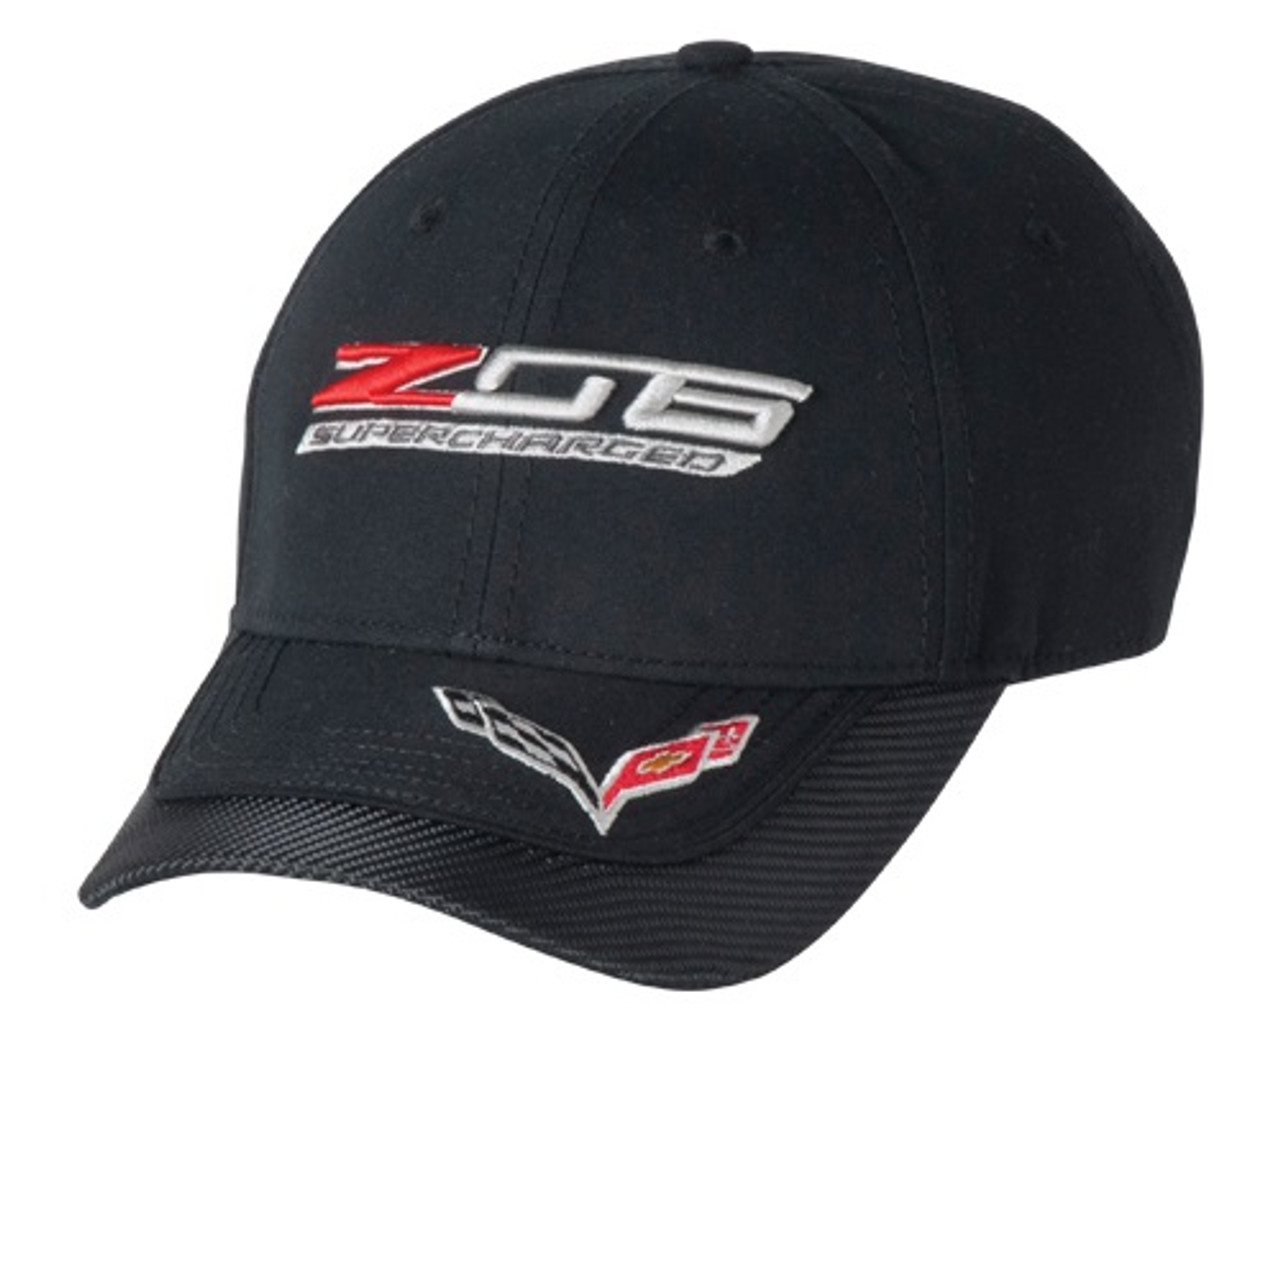 C7 Corvette Z06 Black Hat with Carbon Accent Bill